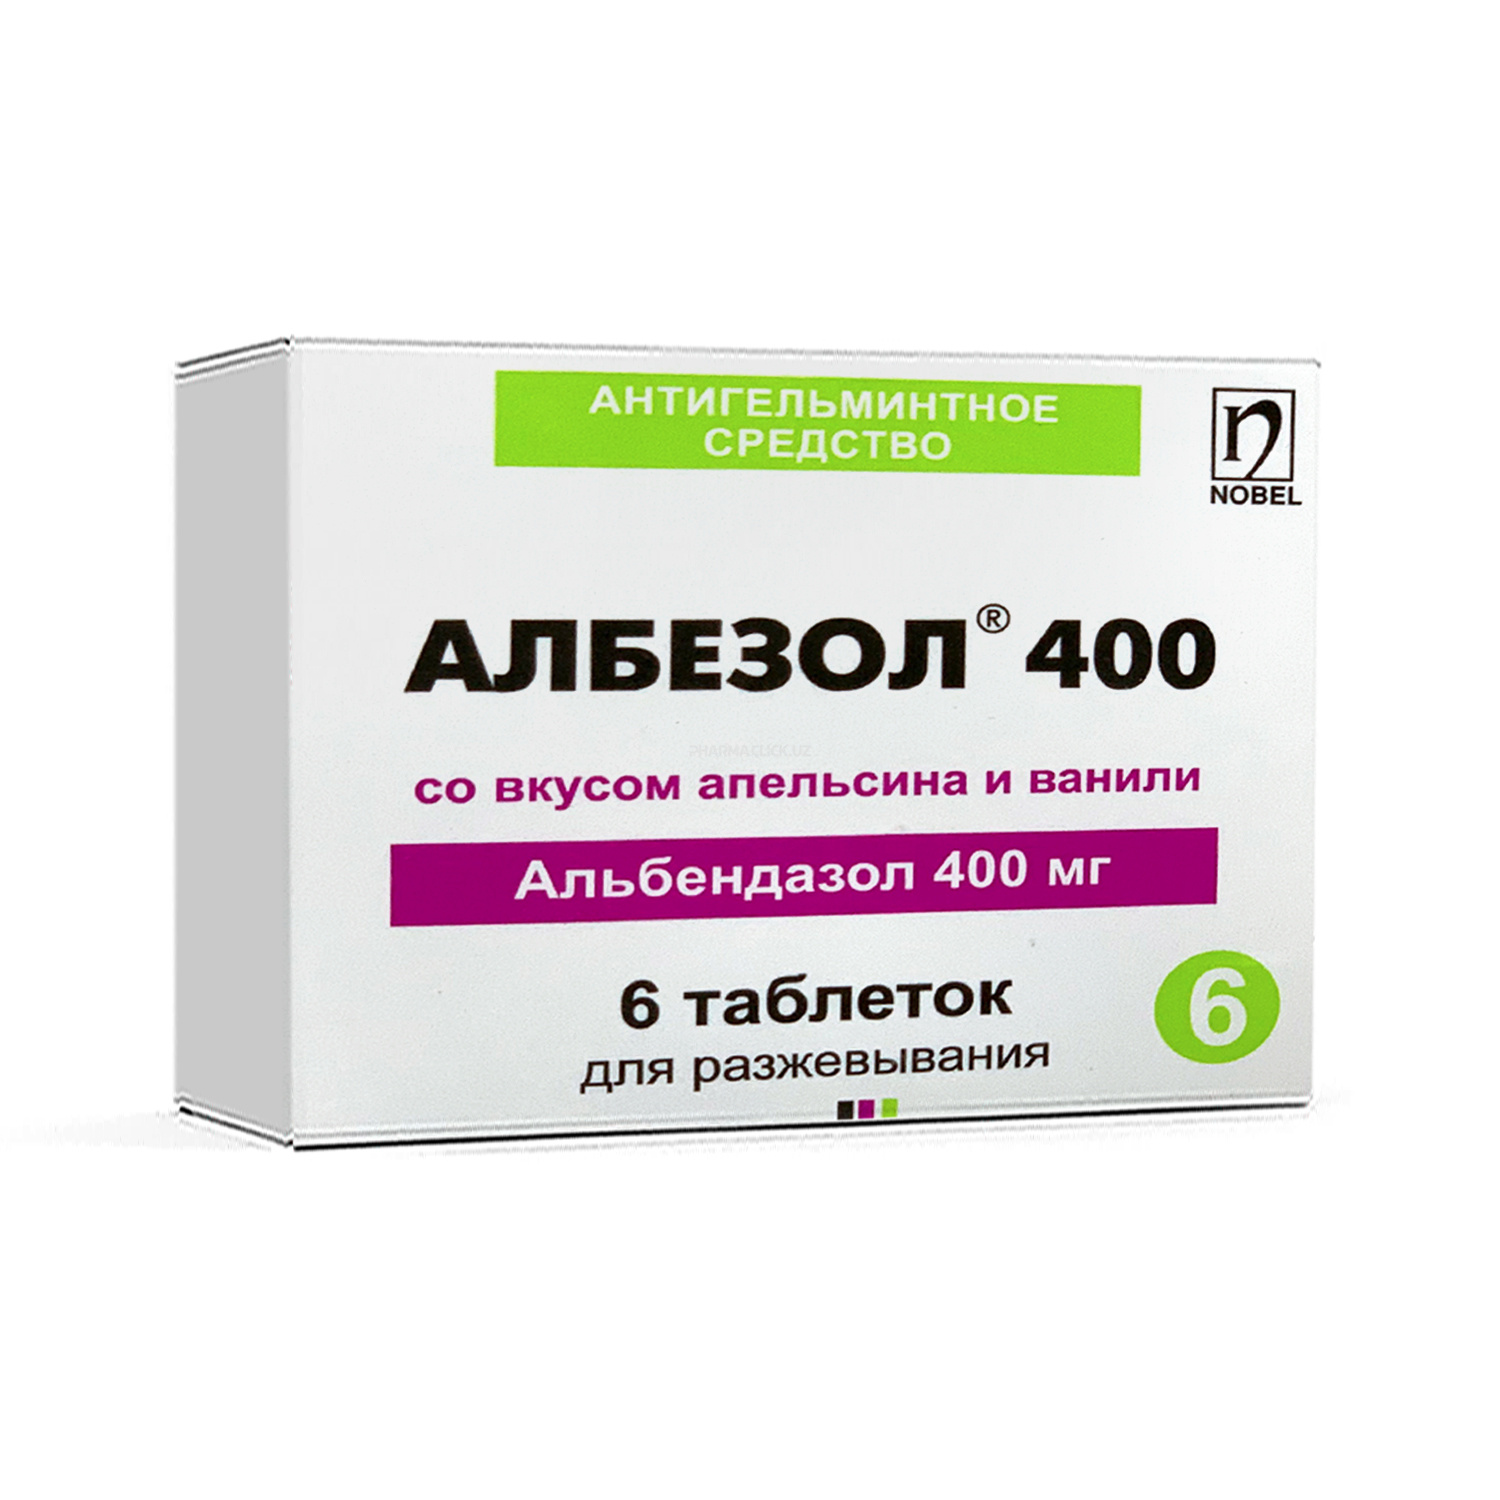 Аlbezol 400 tab. №6